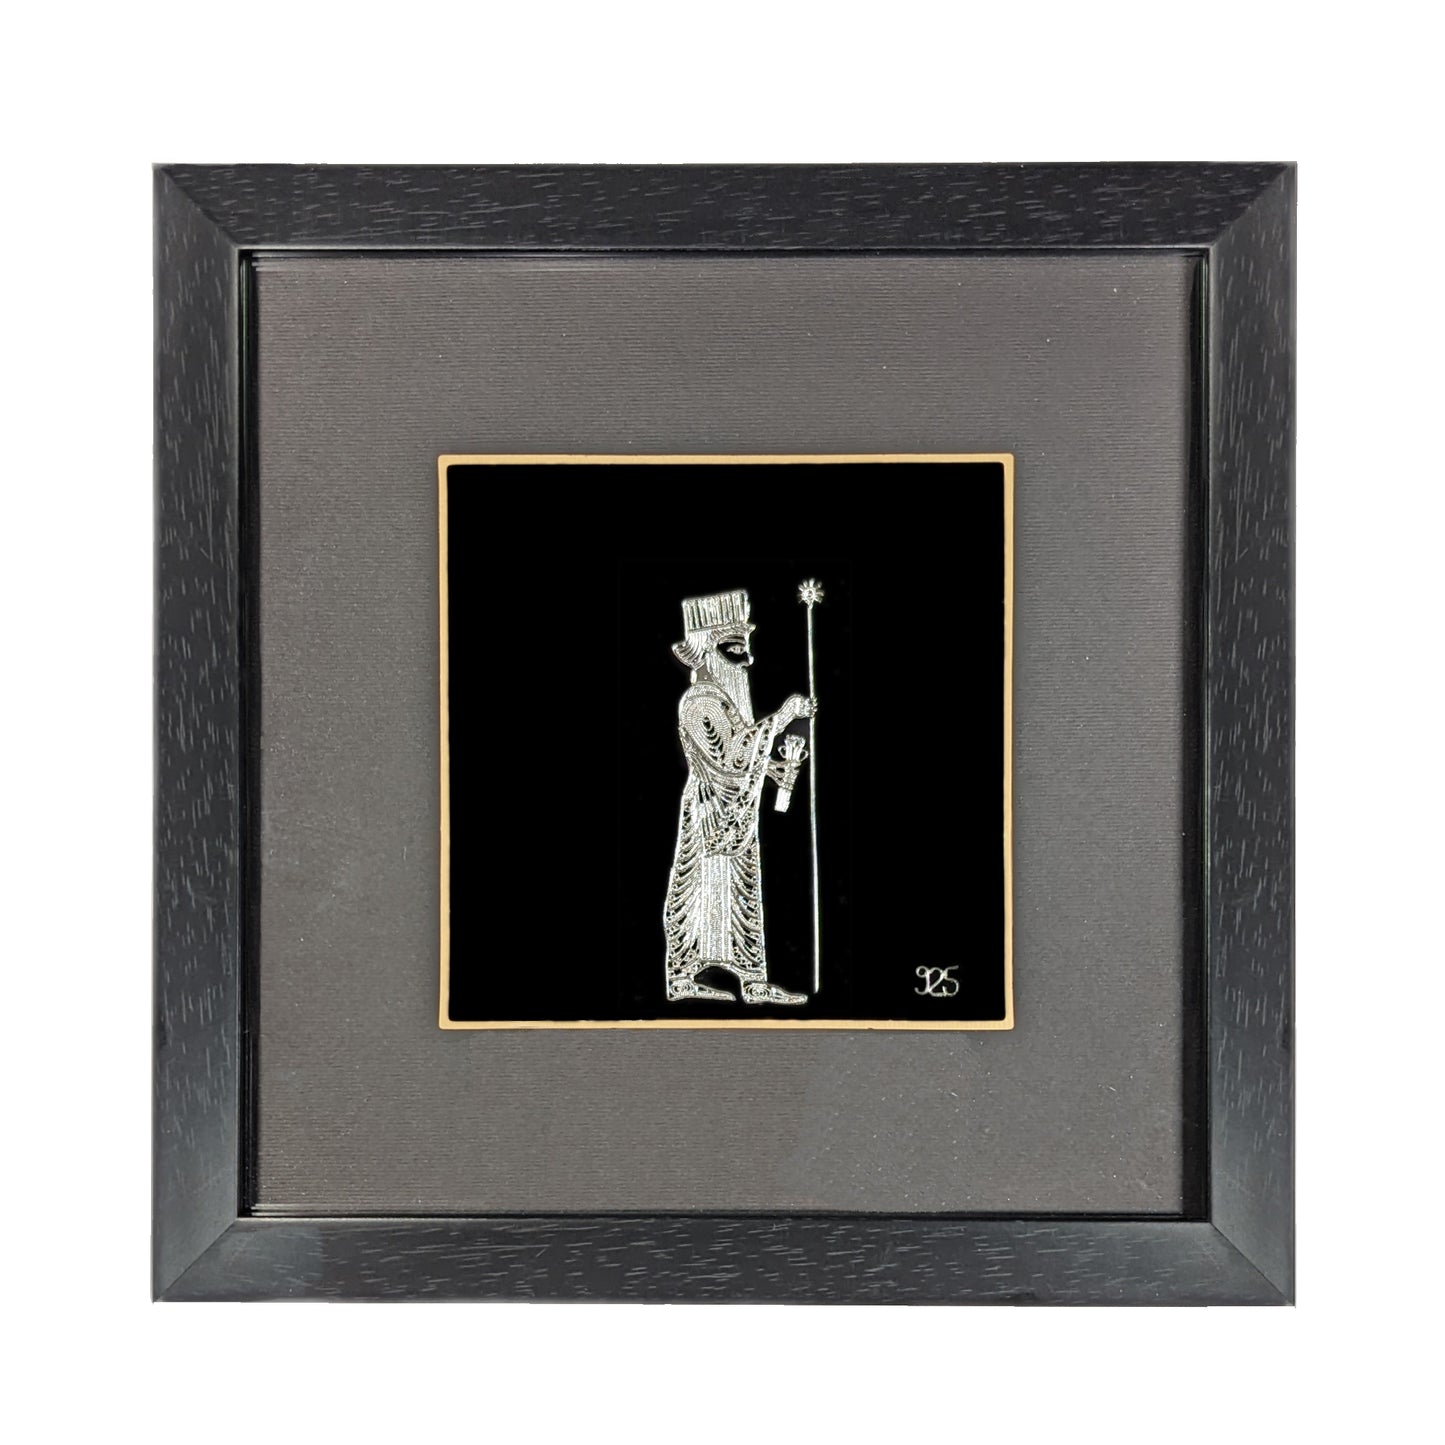 Silver Achaemenid Soldier Artwork in a sleek Framed Display